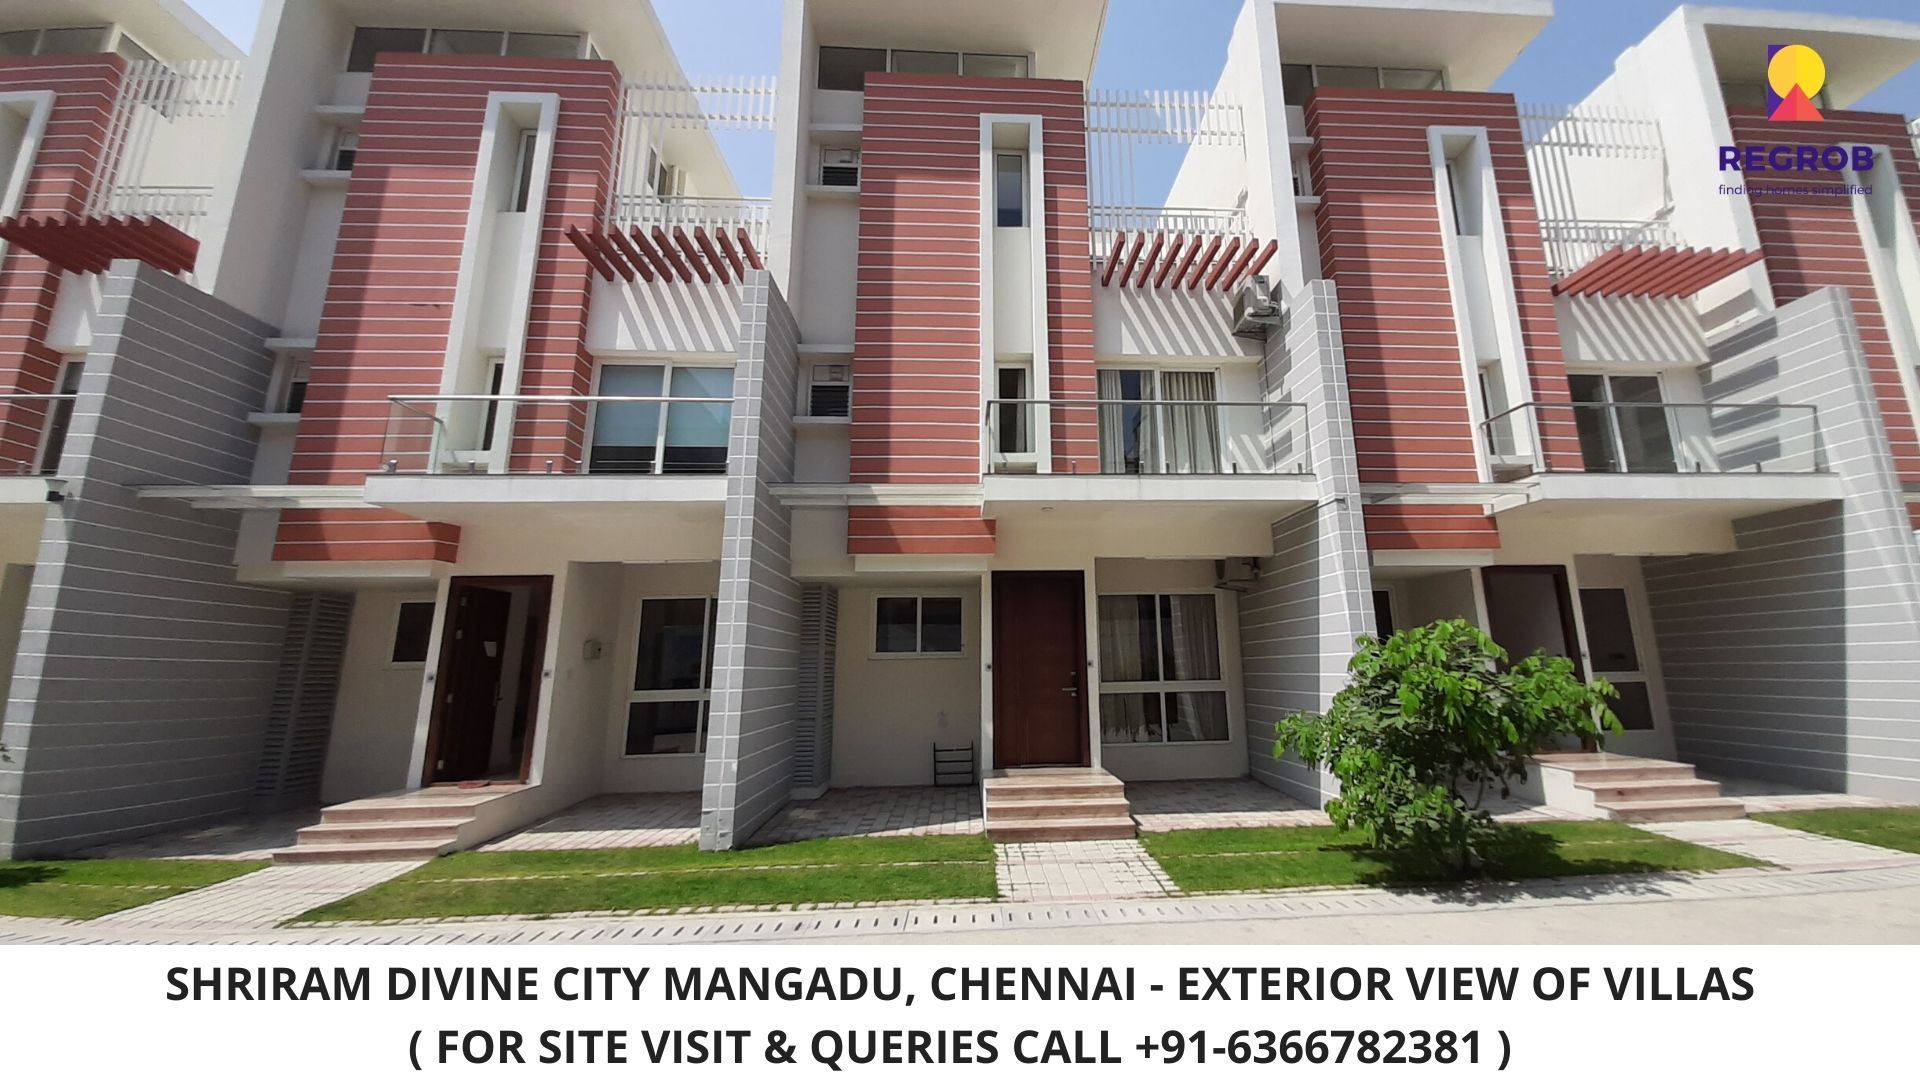 Shriram Divine City Villas Mangadu Chennai